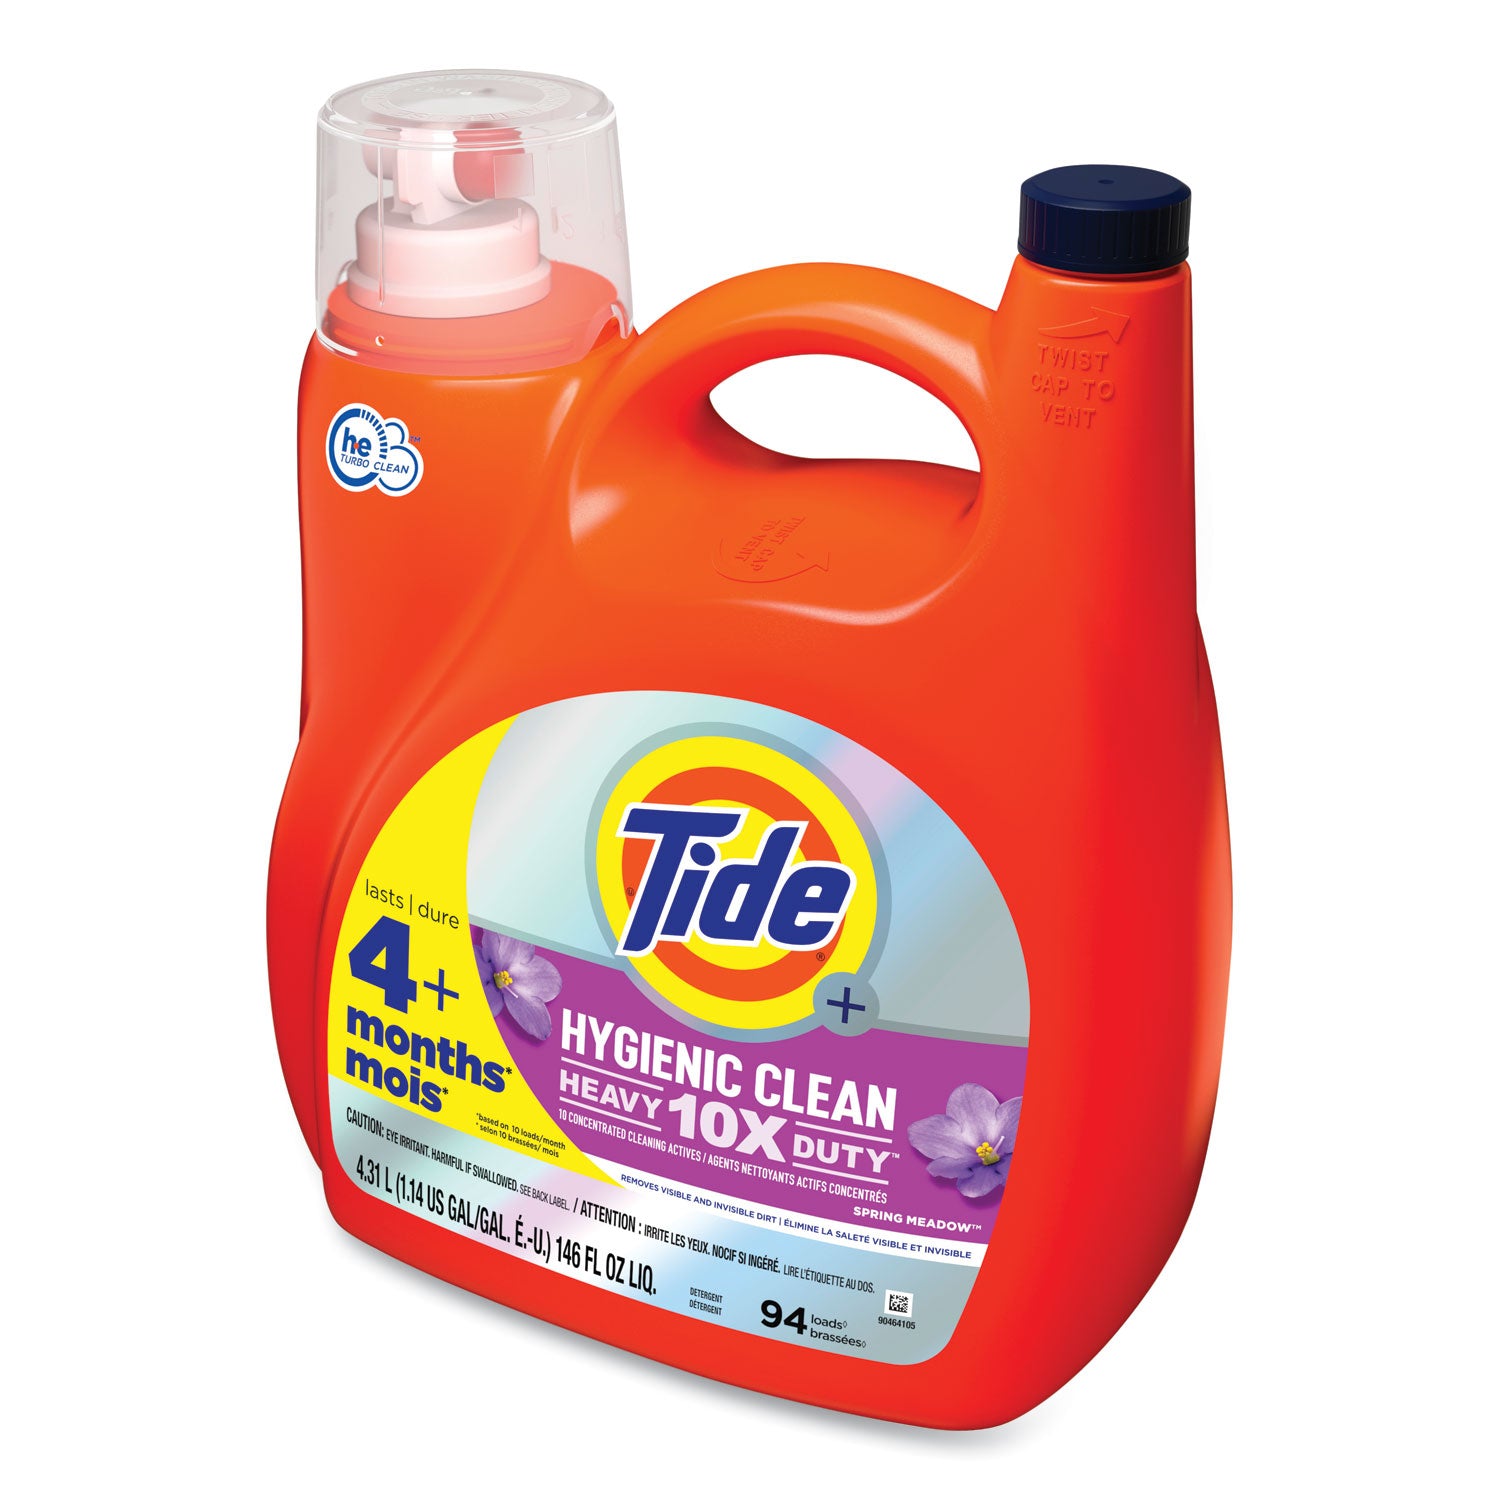 hygienic-clean-heavy-10x-duty-liquid-laundry-detergent-spring-meadow-scent-146-oz-pour-bottle-4-carton_pgc09449 - 4